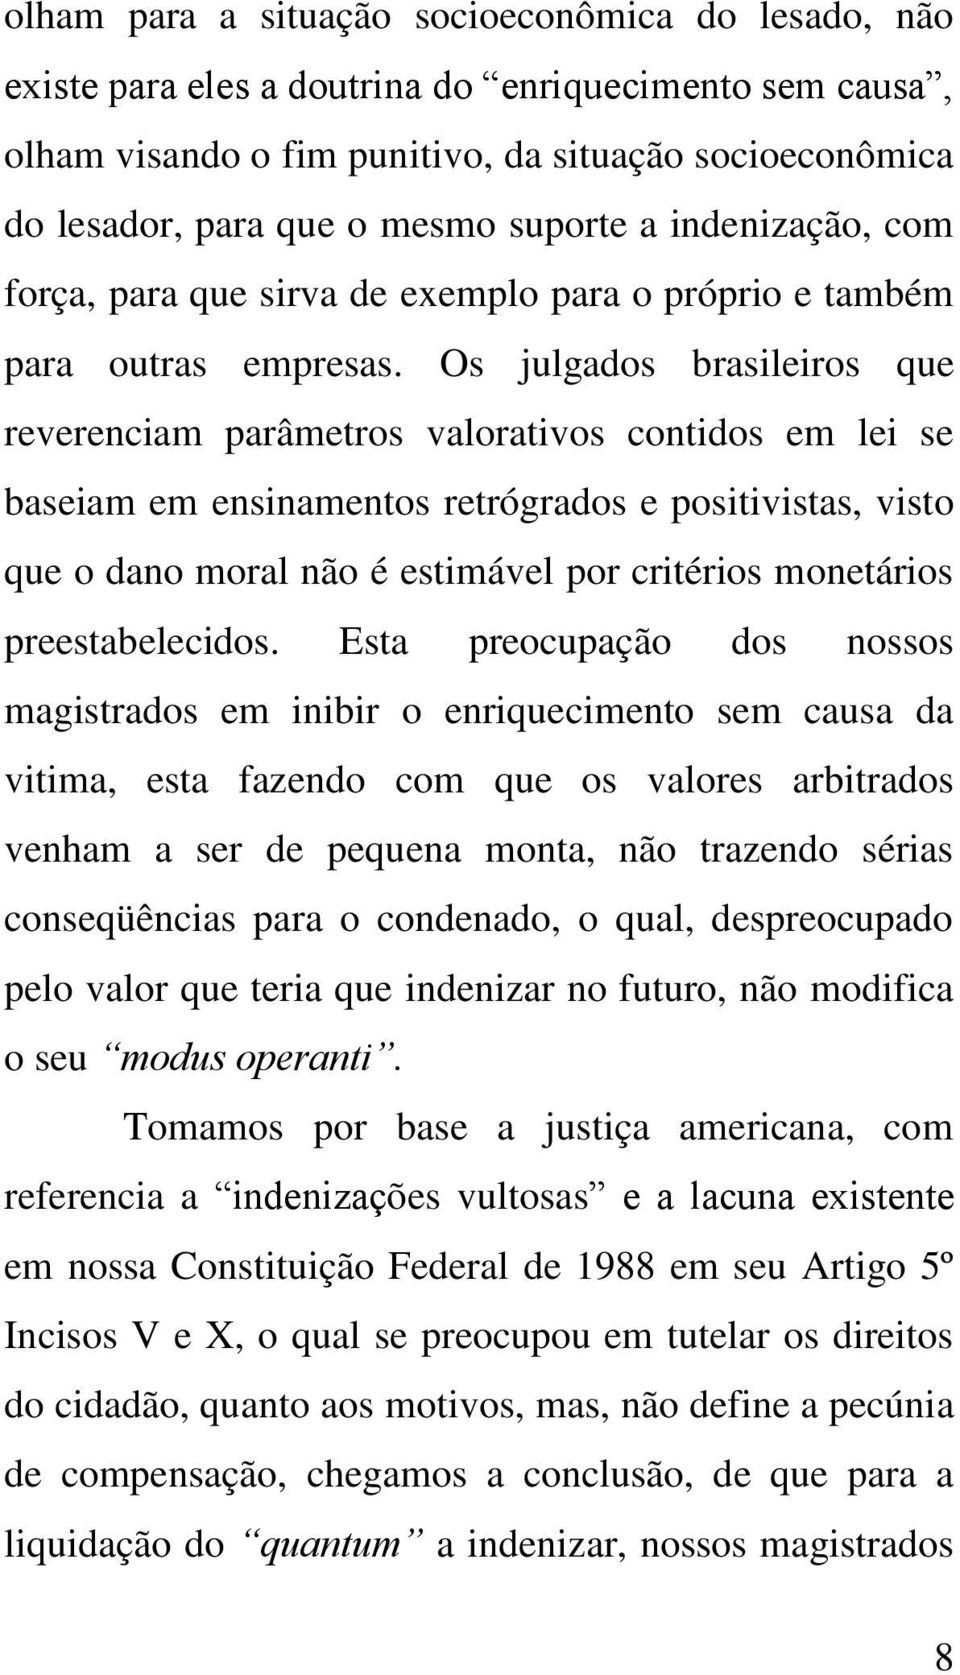 Os julgados brasileiros que reverenciam parâmetros valorativos contidos em lei se baseiam em ensinamentos retrógrados e positivistas, visto que o dano moral não é estimável por critérios monetários